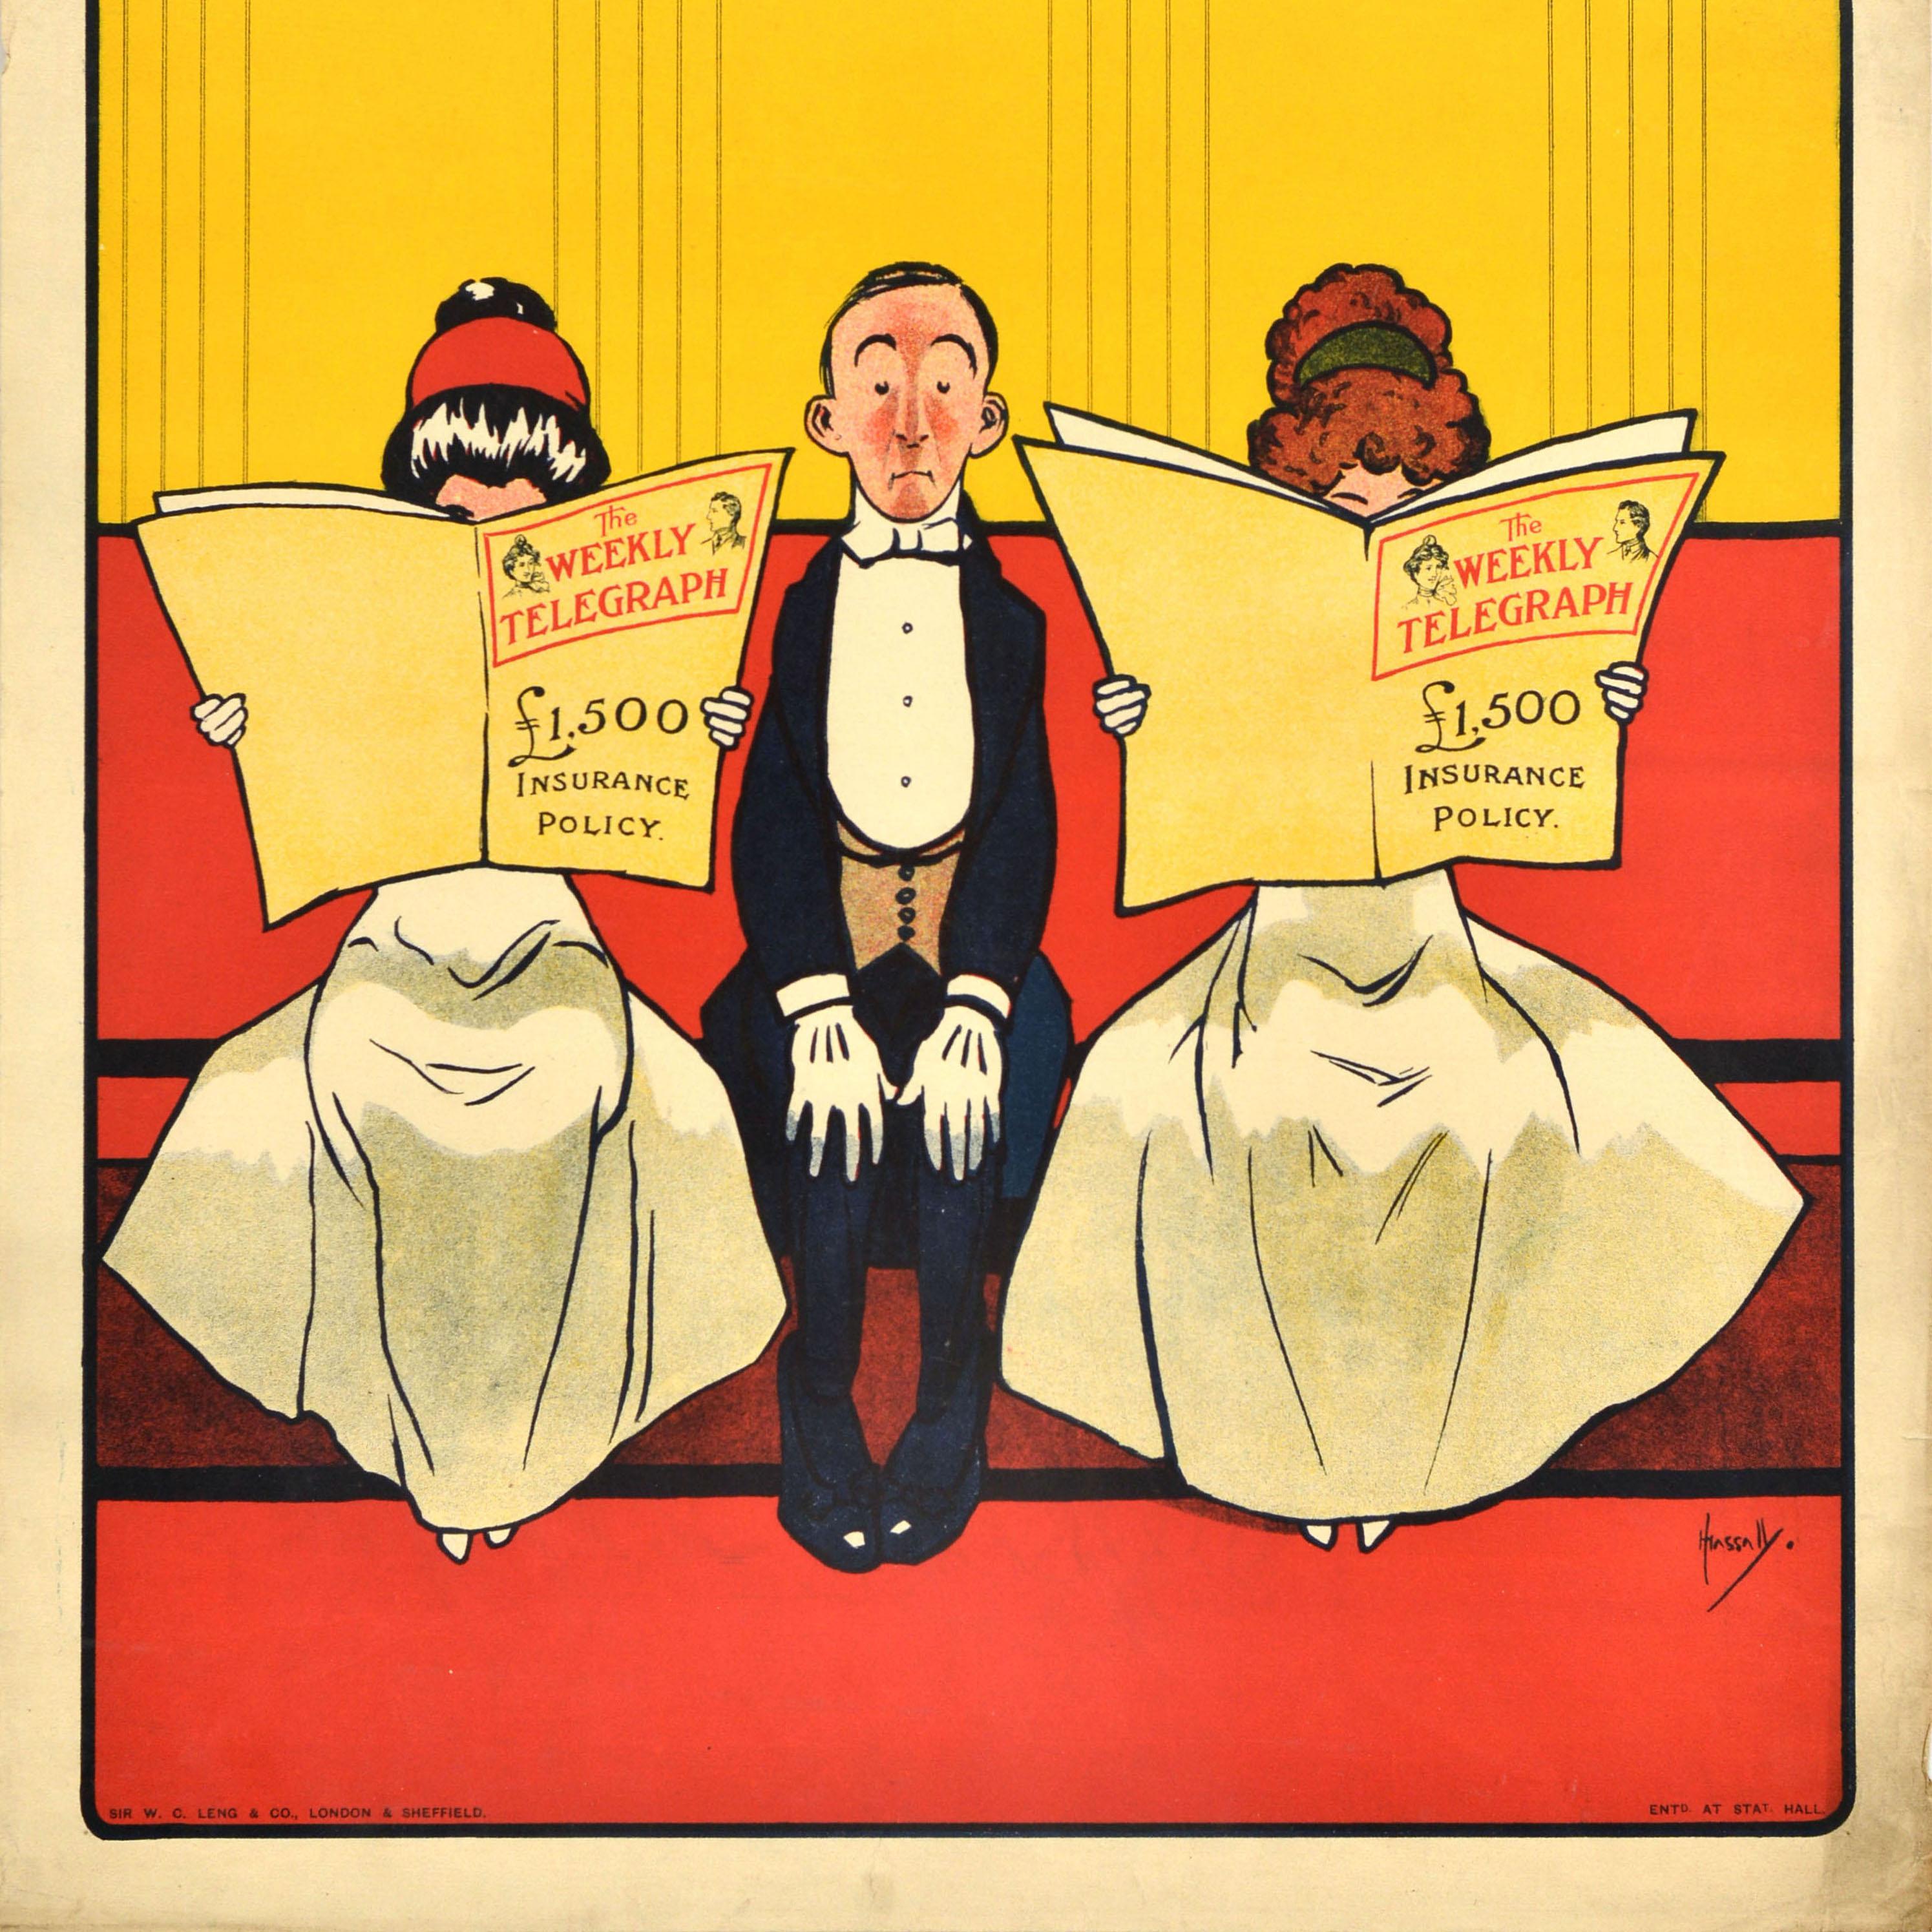 Affiche publicitaire originale d'un journal ancien - The Weekly Telegraph - comportant une illustration amusante et colorée du célèbre artiste John Hassall (1868-1948) d'un homme en costume élégant et gants blancs assis entre deux dames en robes